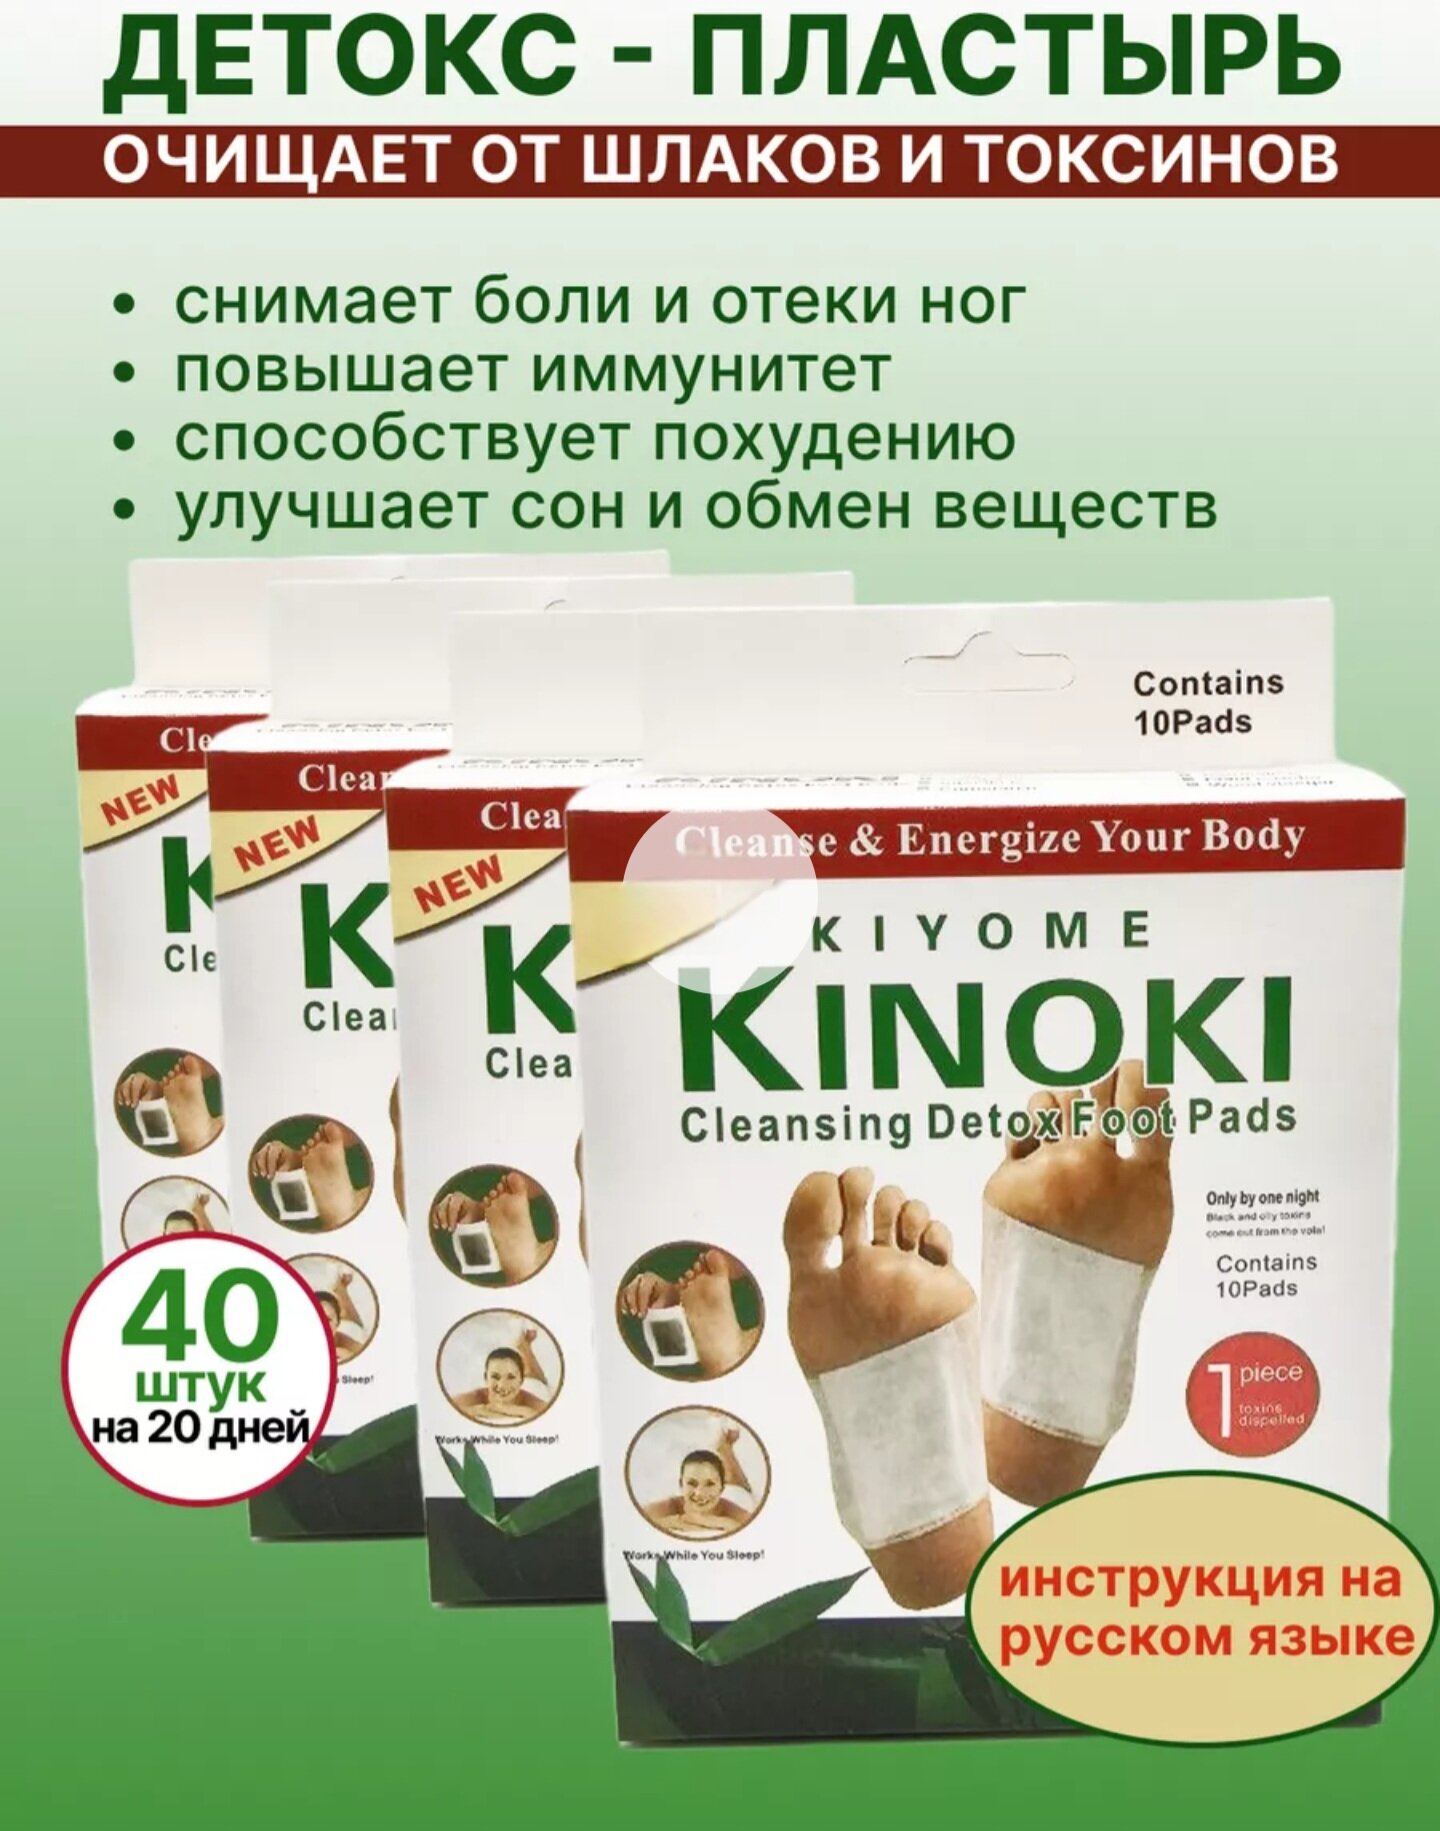 Китайский пластырь Kinoki детокс для стоп, лечебный пластырь Киноки для выведения токсинов 4 пачки по 10 штук (=40шт)